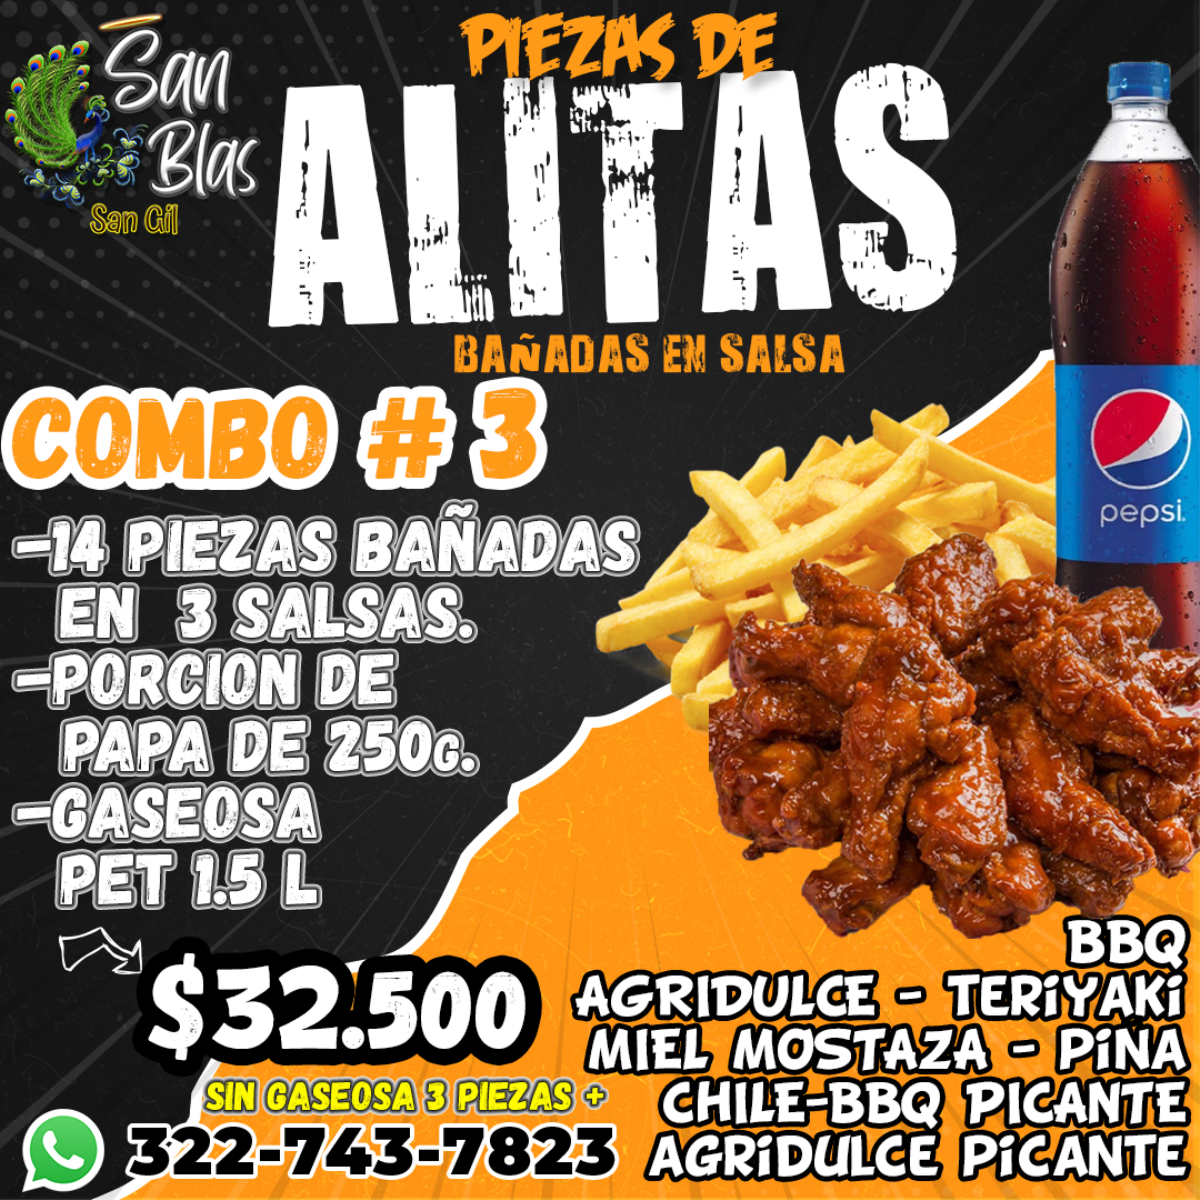 San Blas Cafe Bar Alitas - Alitas Combo 3